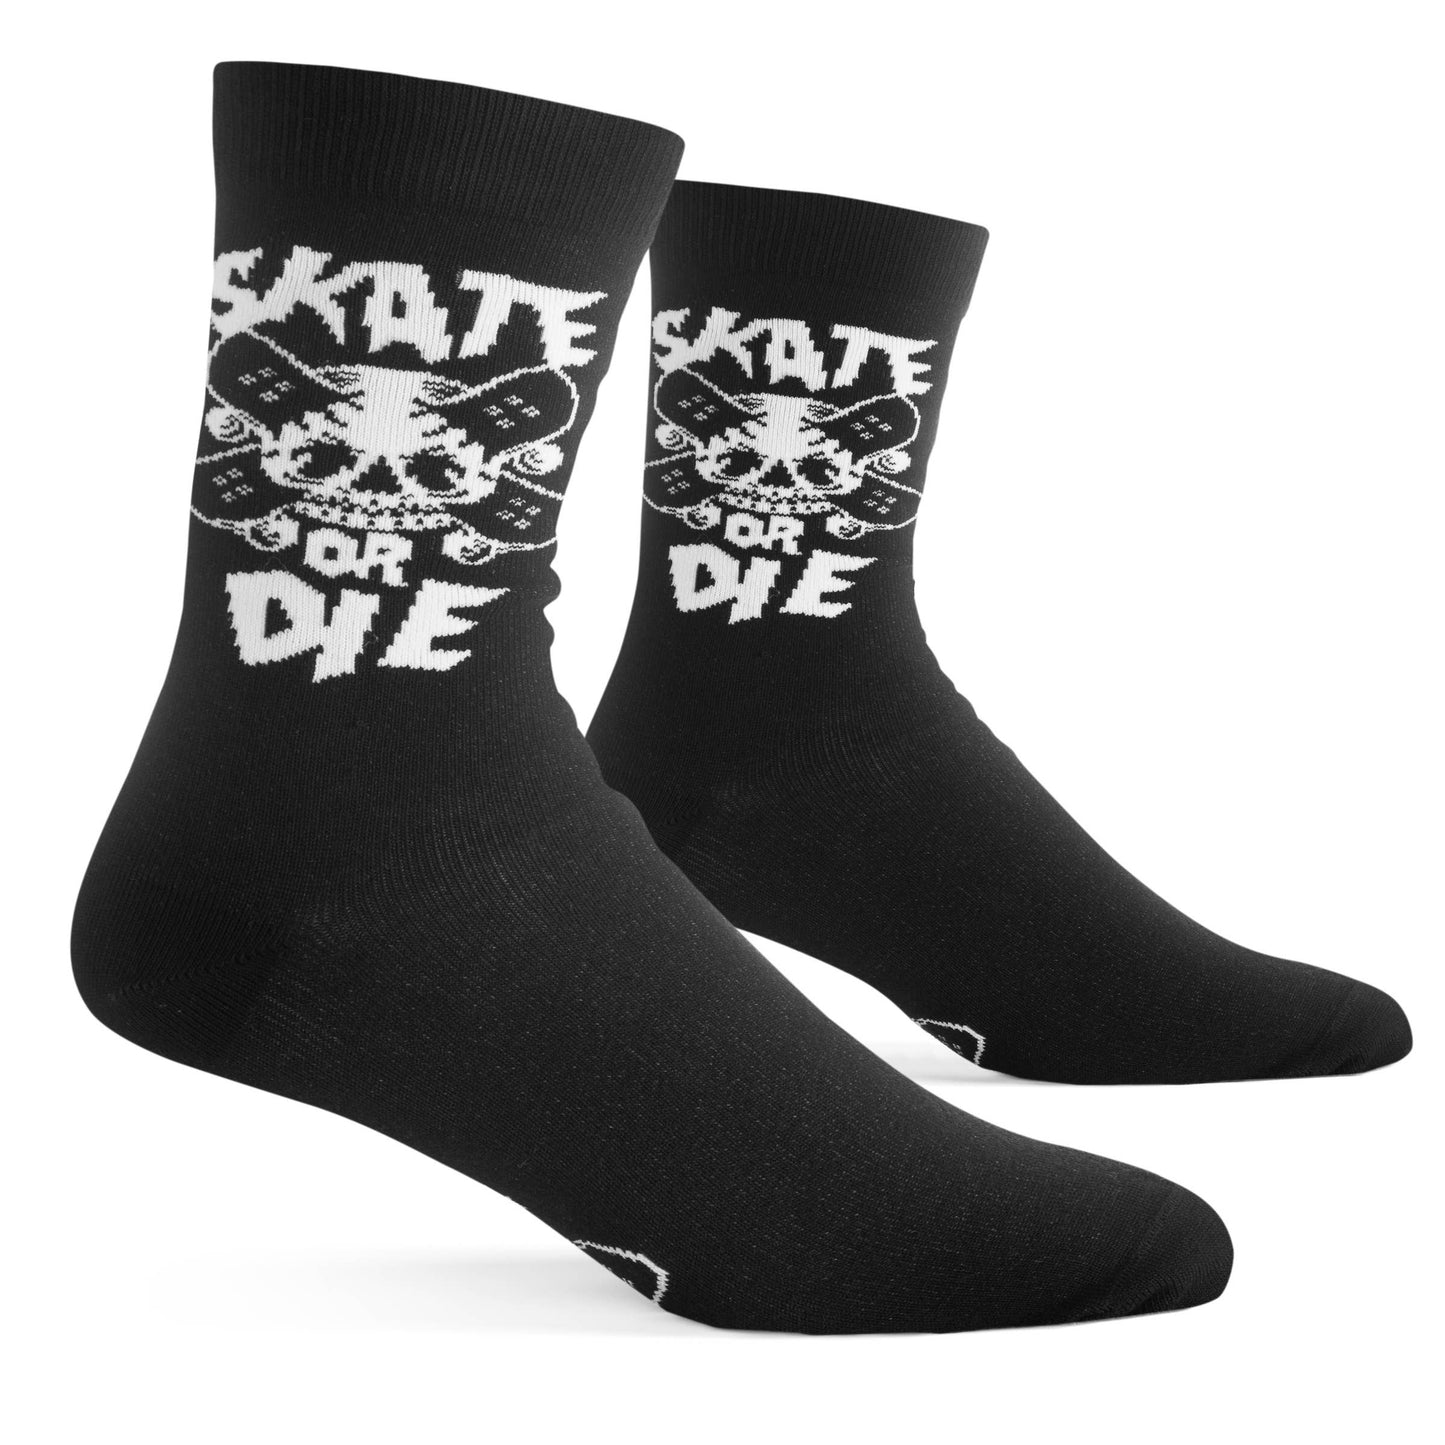 Lavley - Skate or Die Socks